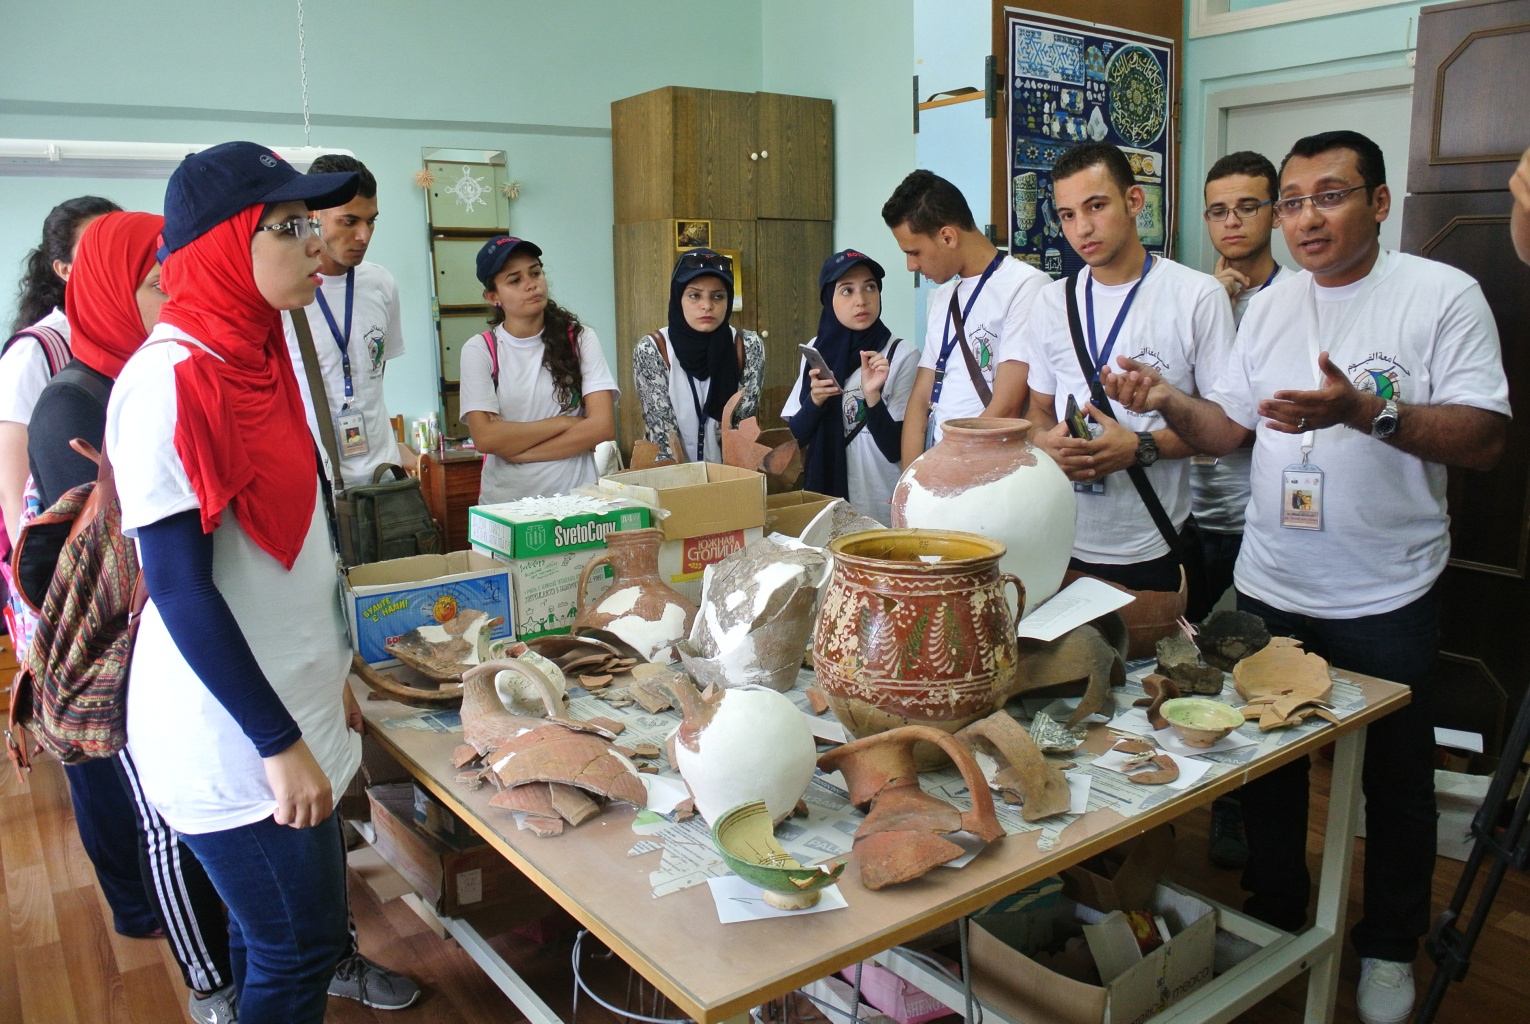 Док. Валид Али Халил со студентами Фаюмского университета в реставрационной мастерской АМЗ